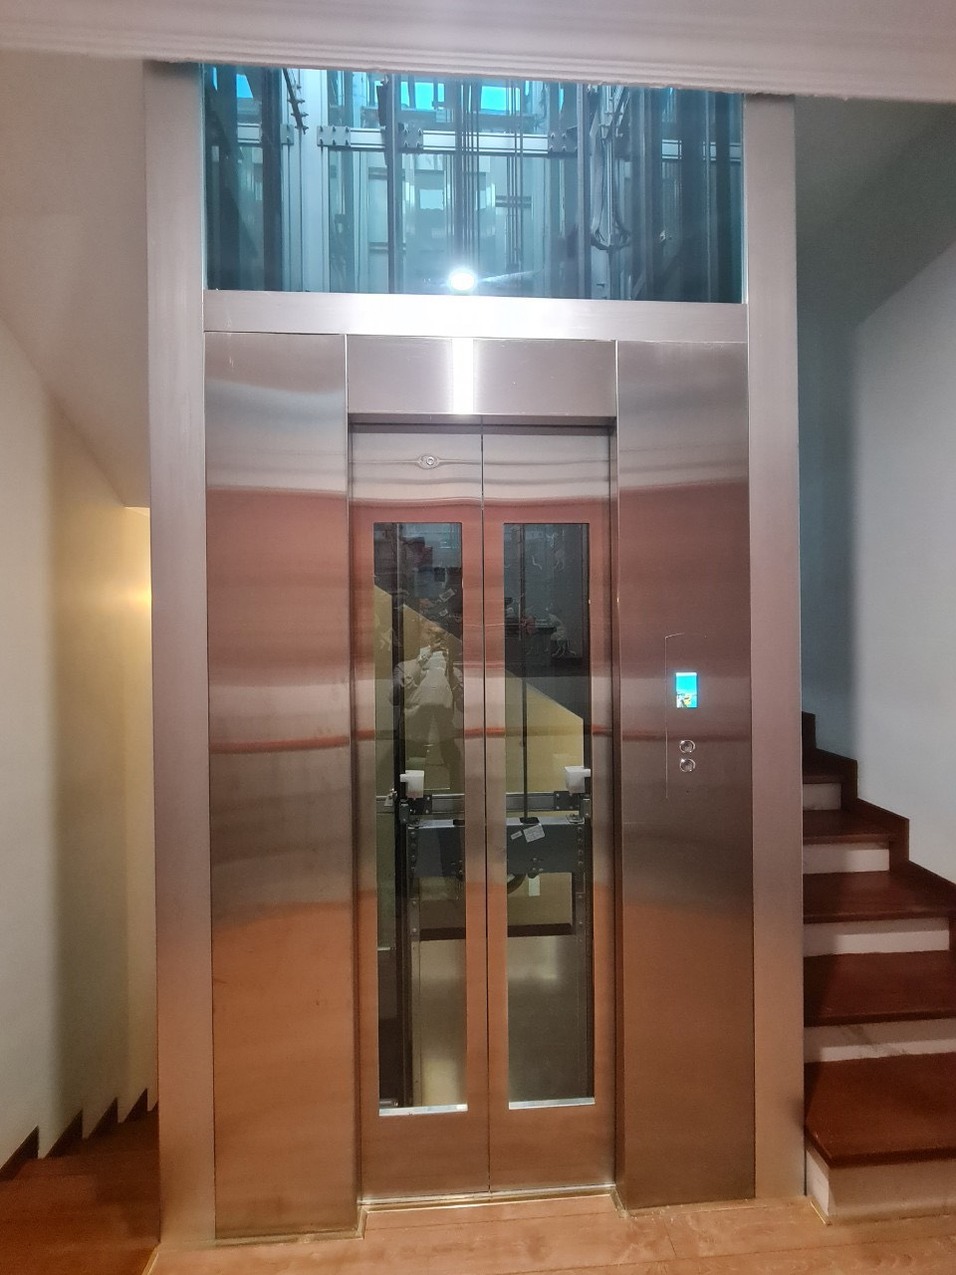 Cung cấp lắp đặt thang máy tại Ecopark Hưng Yên